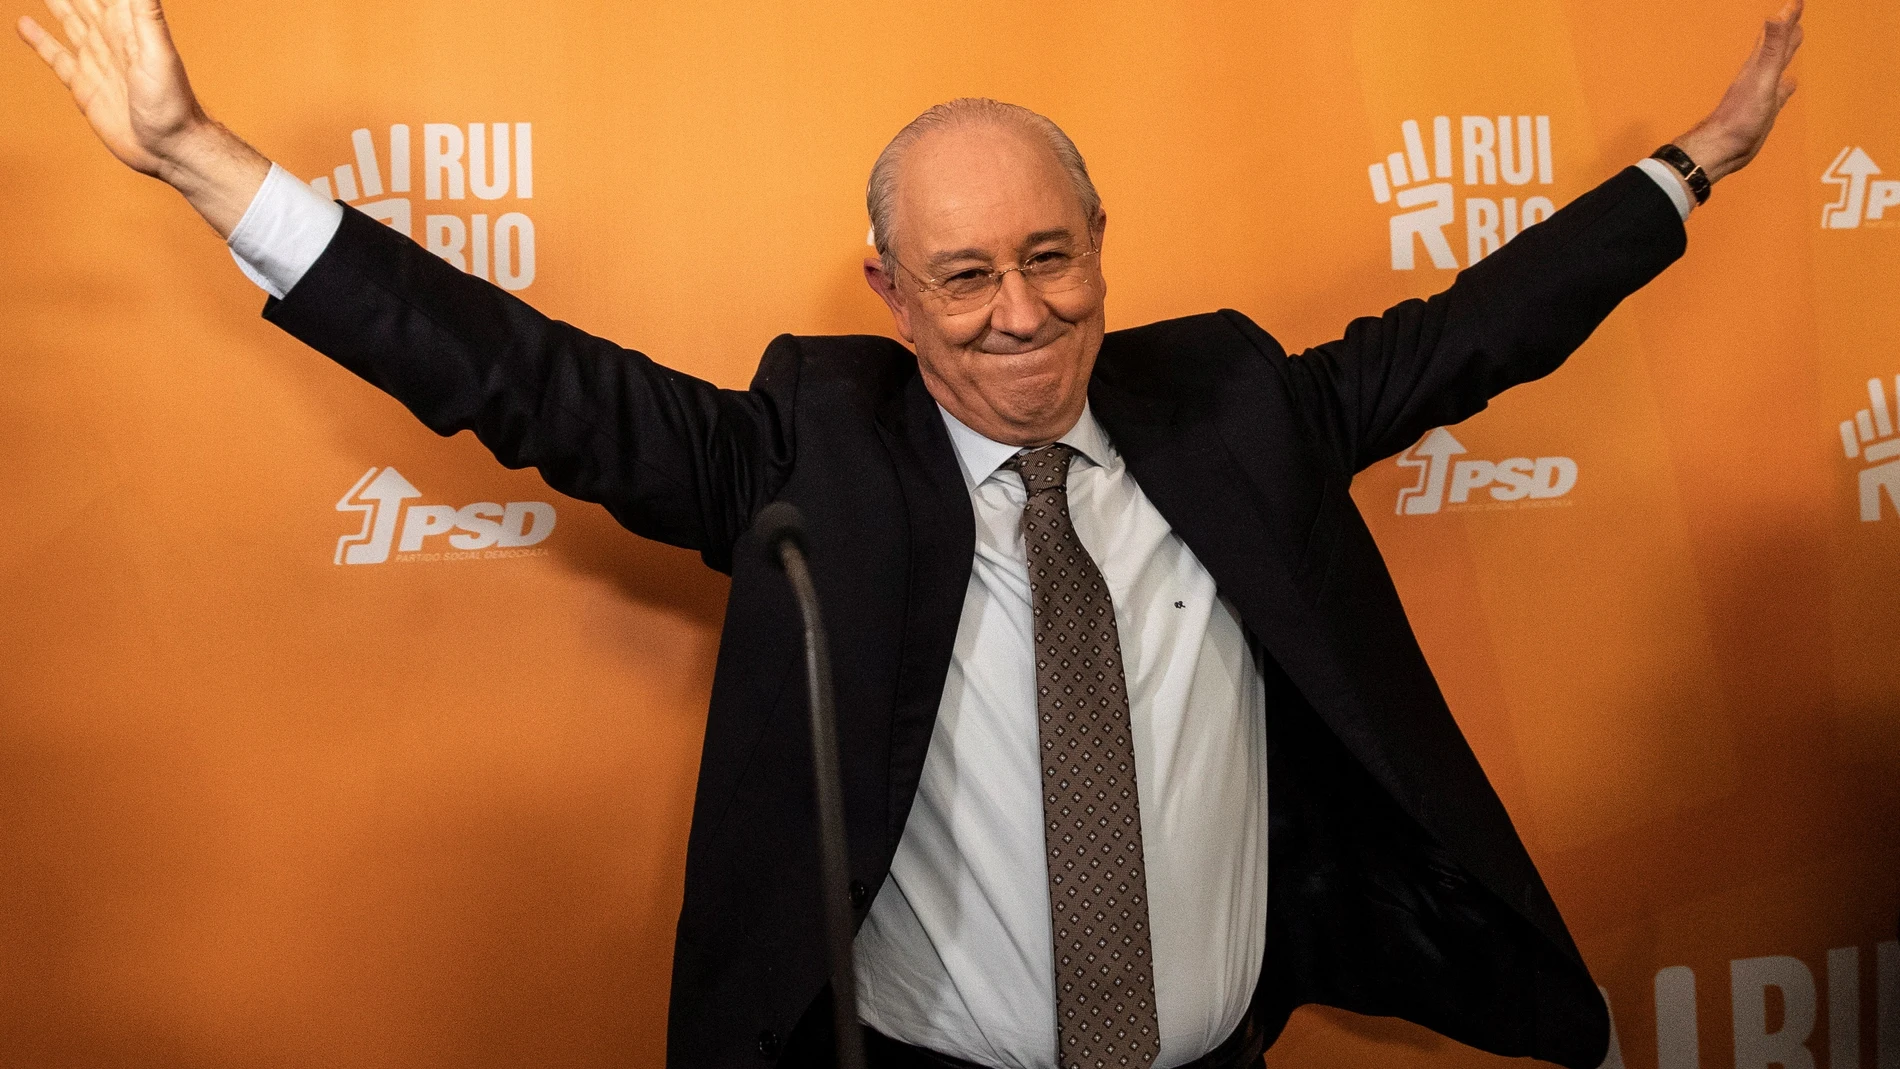 Rui Rio, el candidato del PSD, el principal partido opositor